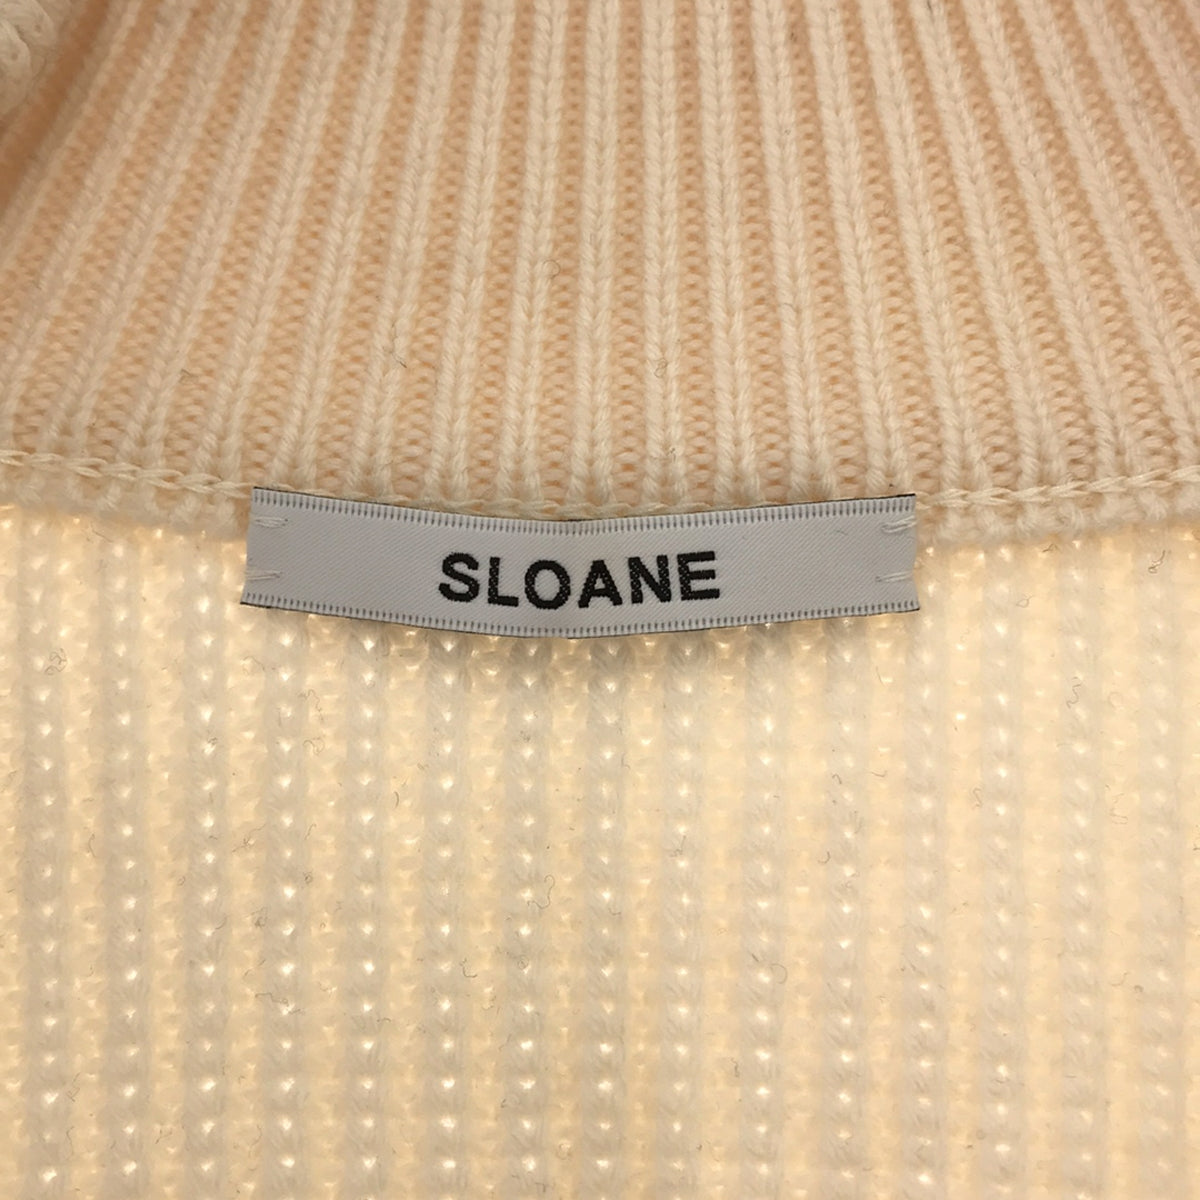 SLOANE / スローン | ウール ハイネック ドライバーズ ニットジャケット | 1 | レディース